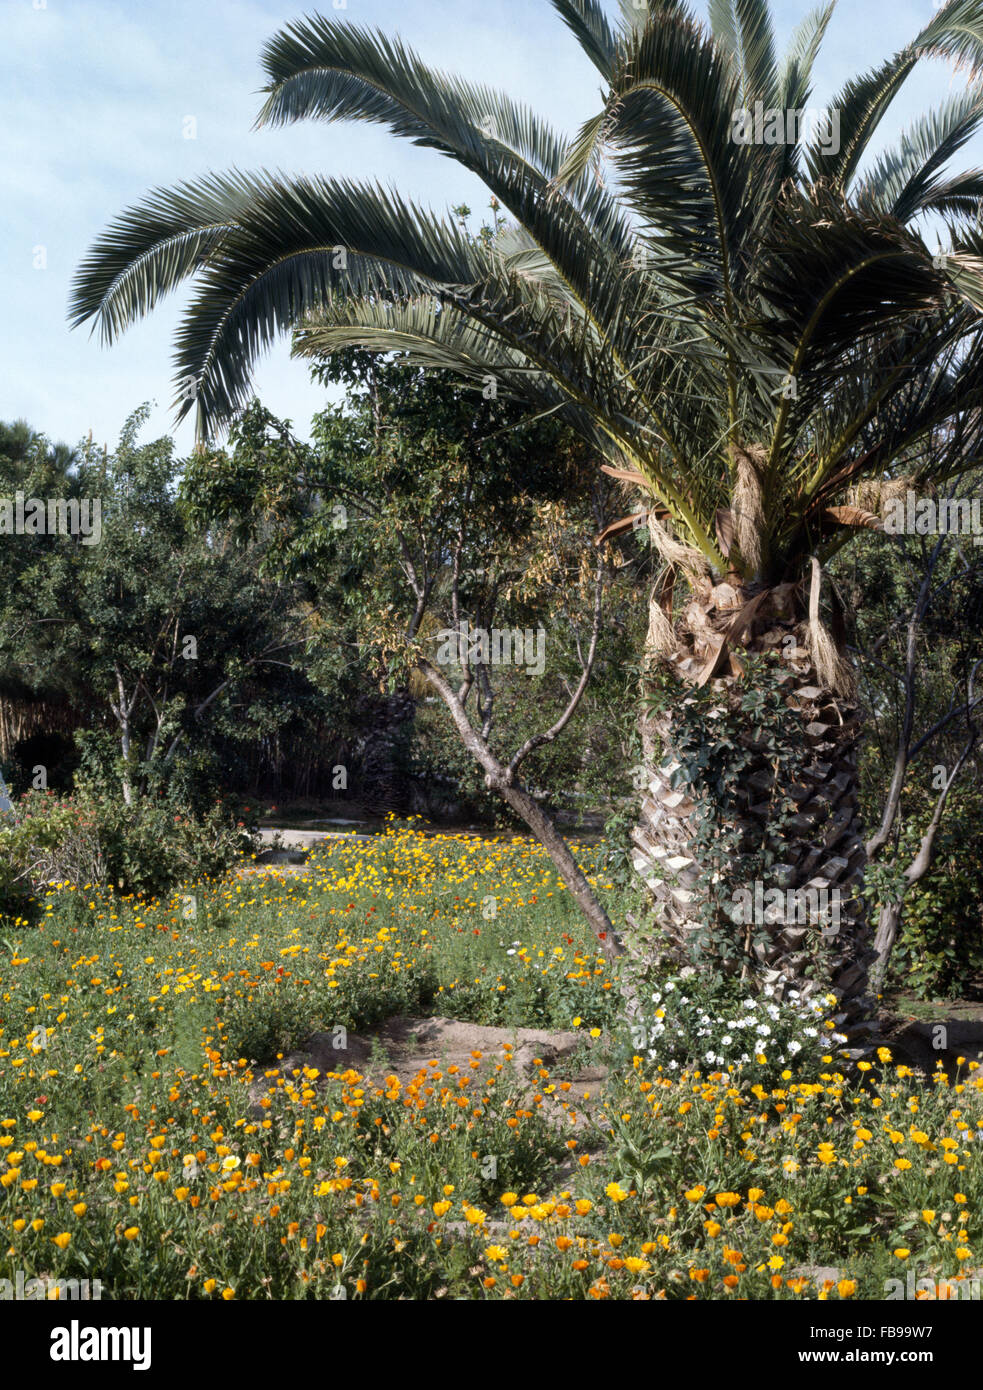 Große Palme mit gelben Ringelblumen in einem marokkanischen Garten gepflanzt Stockfoto